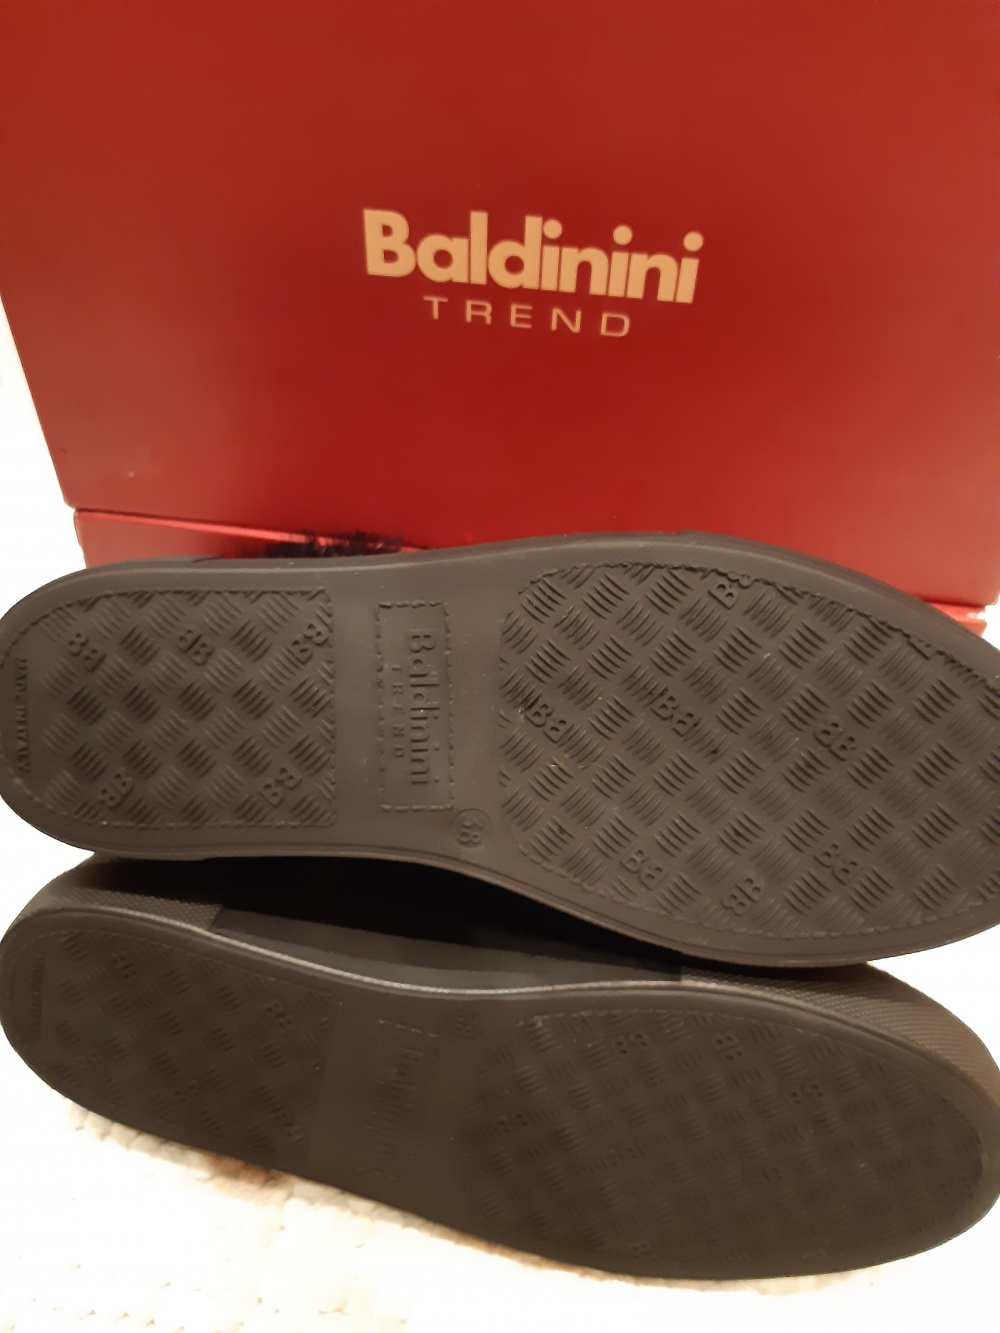 Ботинки Baldinini Trend. Размер 38-39.